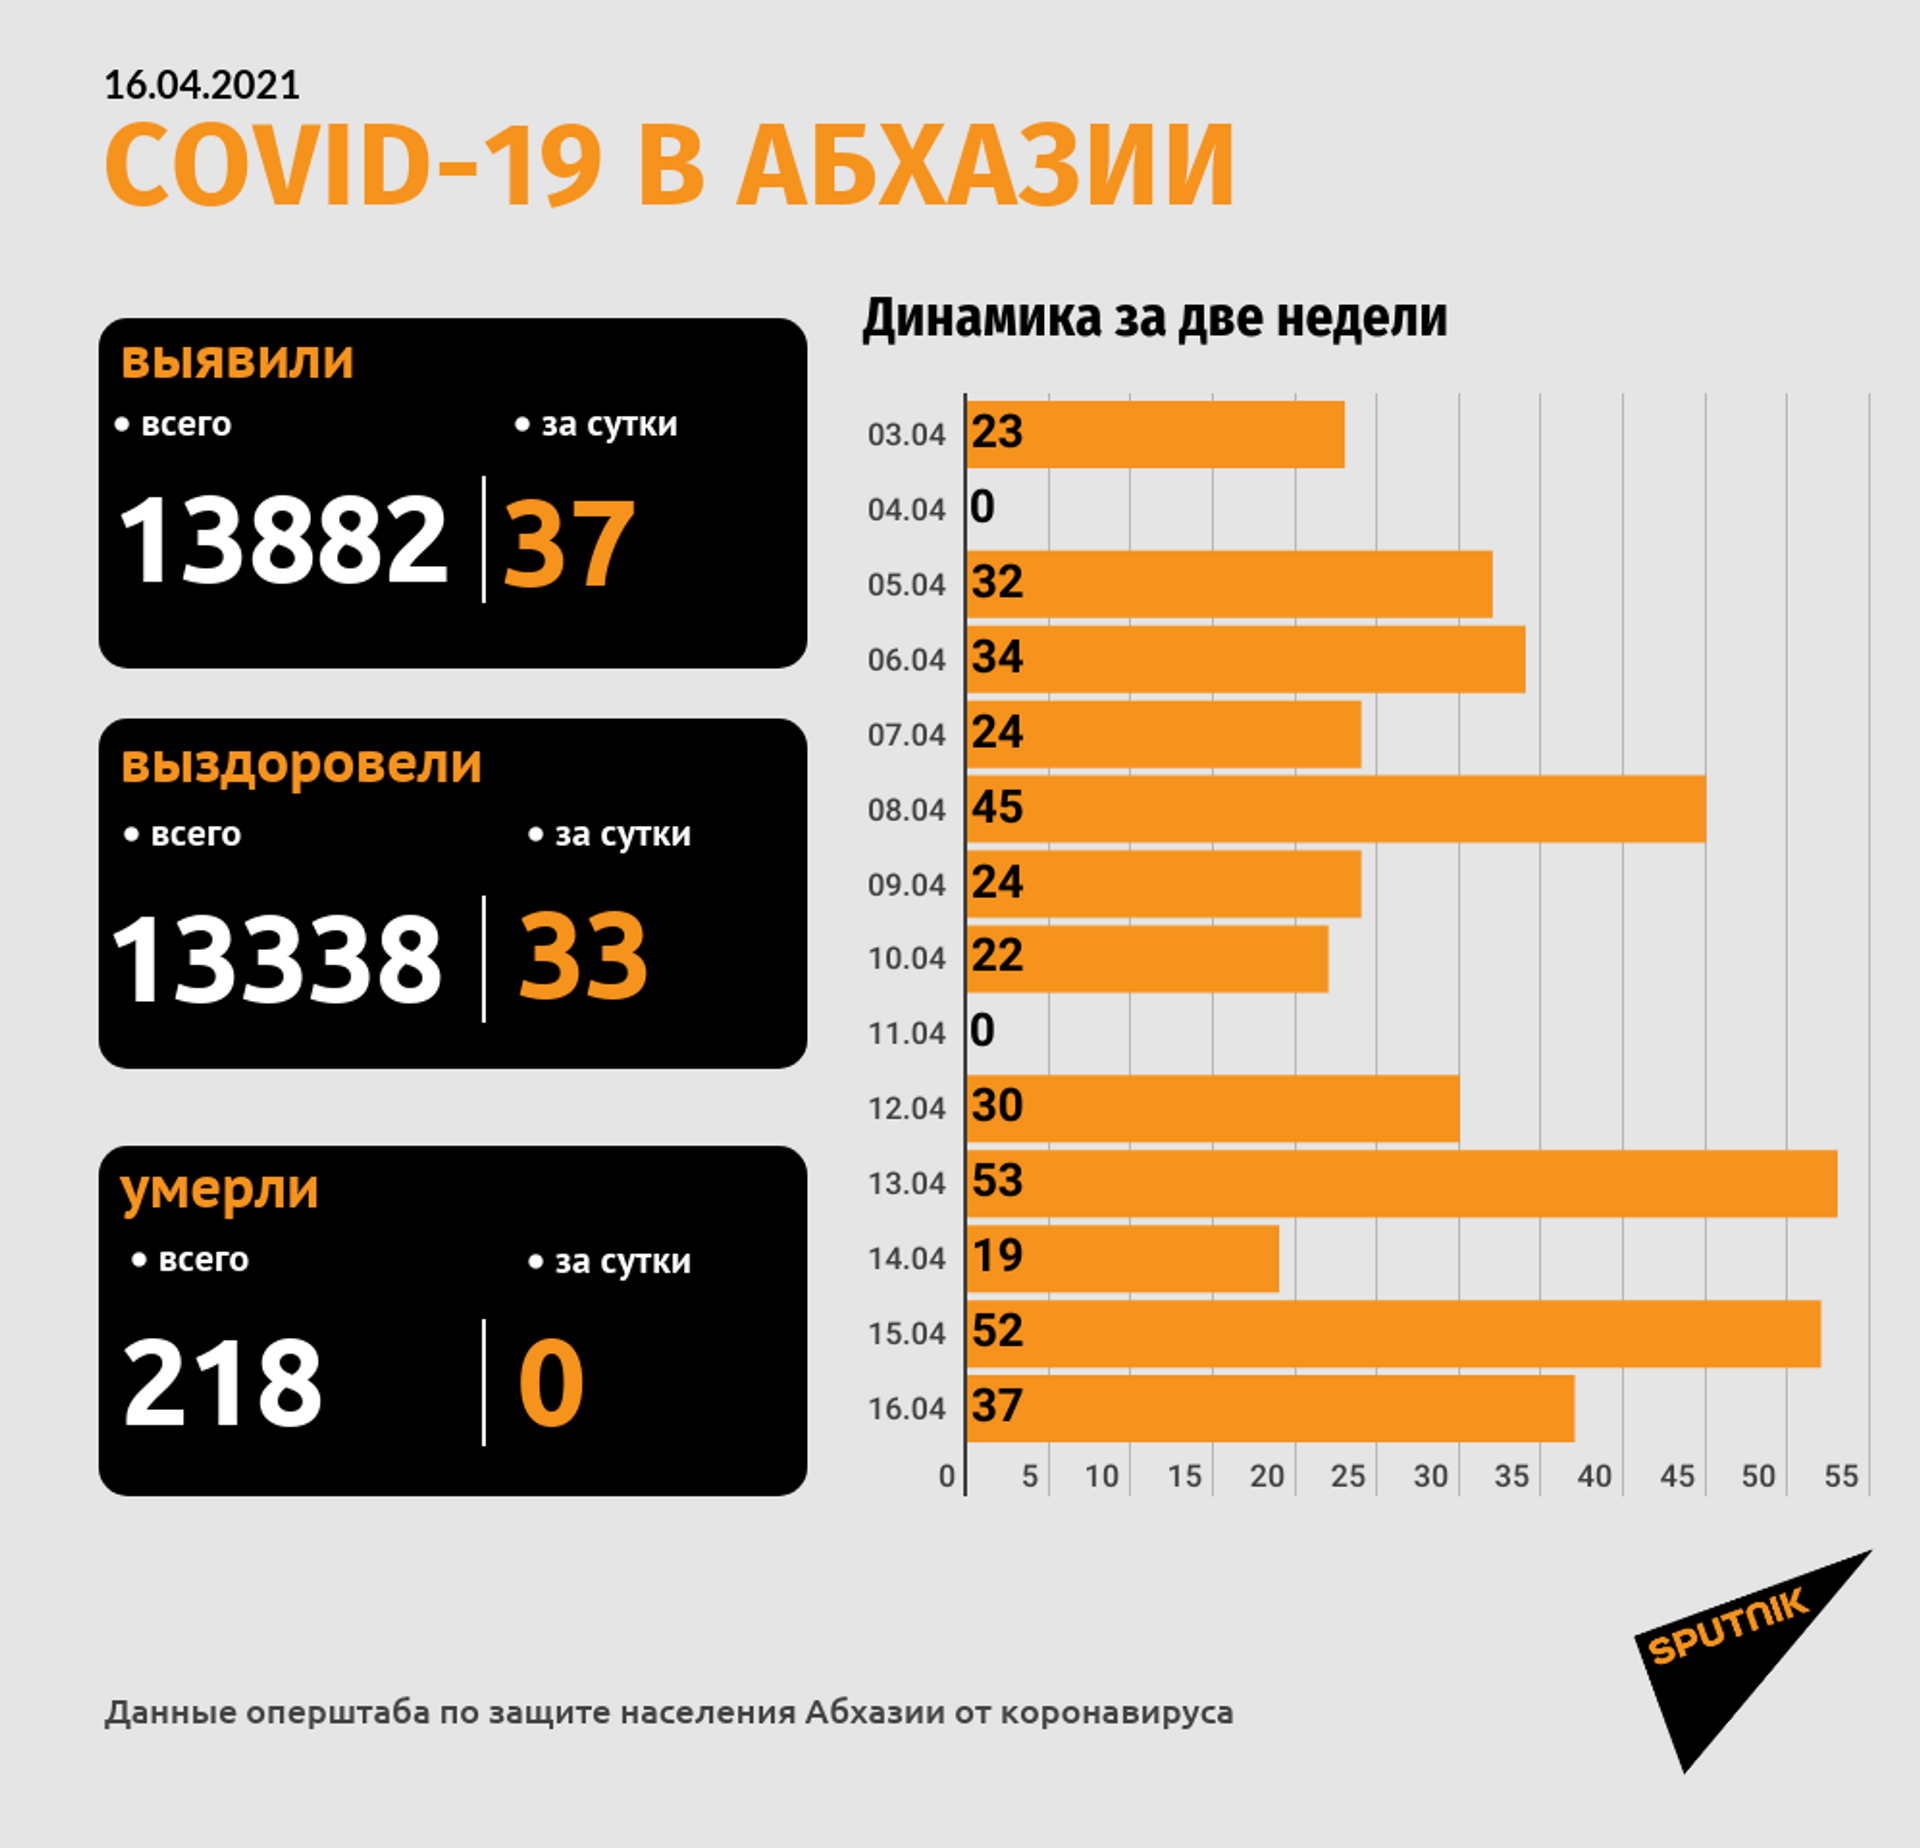 Число случаев коронавируса в Абхазии выросло на 37 за прошедшие сутки  - Sputnik Абхазия, 1920, 16.04.2021